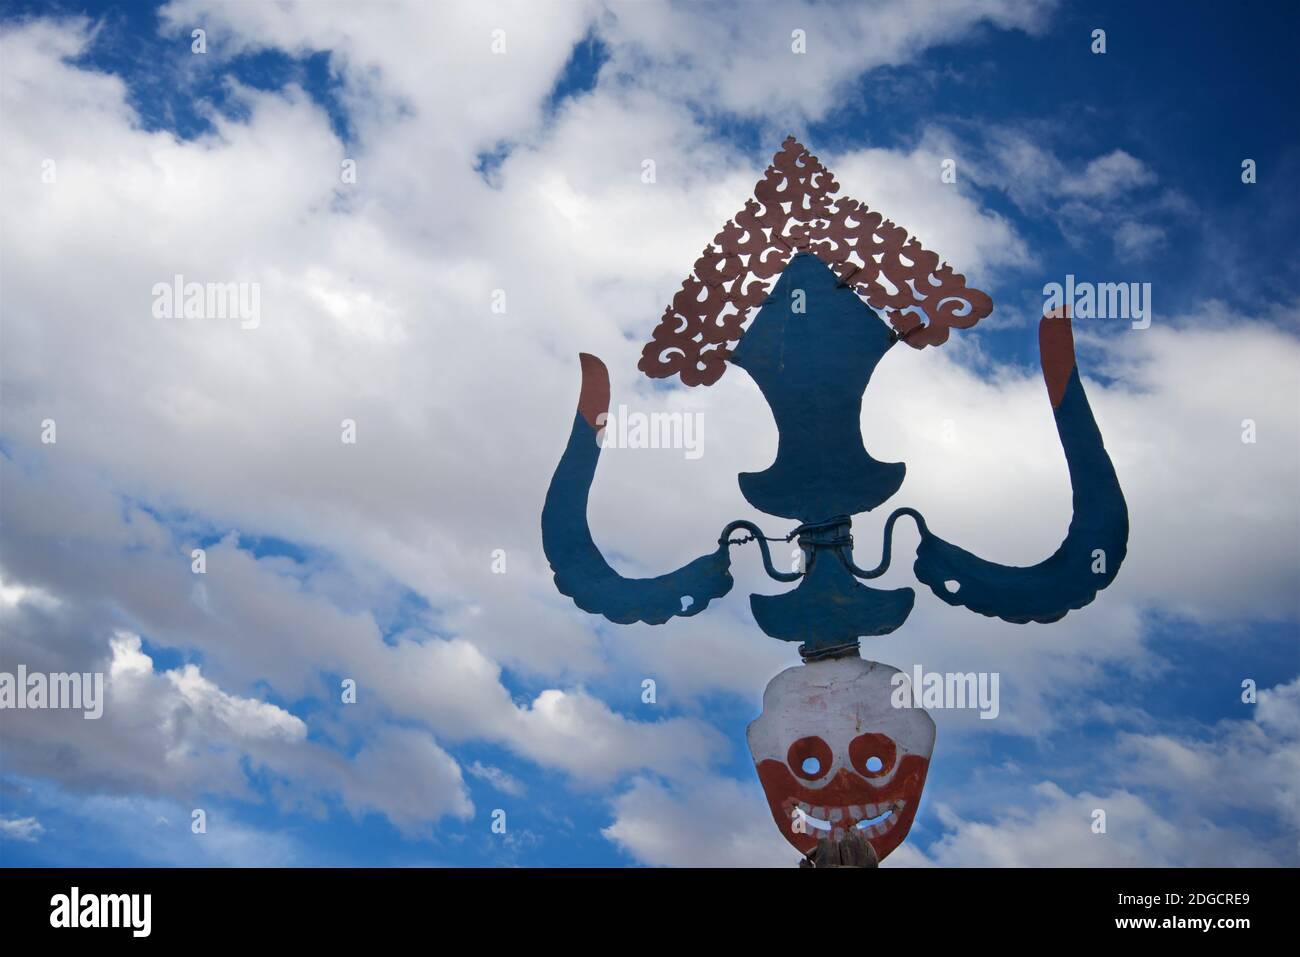 Dettaglio della cima di una ruota di prateria buddista tibetana sul tetto. La parte superiore è progettata per catturare il vento in modo da ruotare il tamburo inferiore. Monastero di Hemis, Hemis, Ladakh, Jammu e Kashmir, India. Iconografia buddista compreso il cranio. Foto Stock